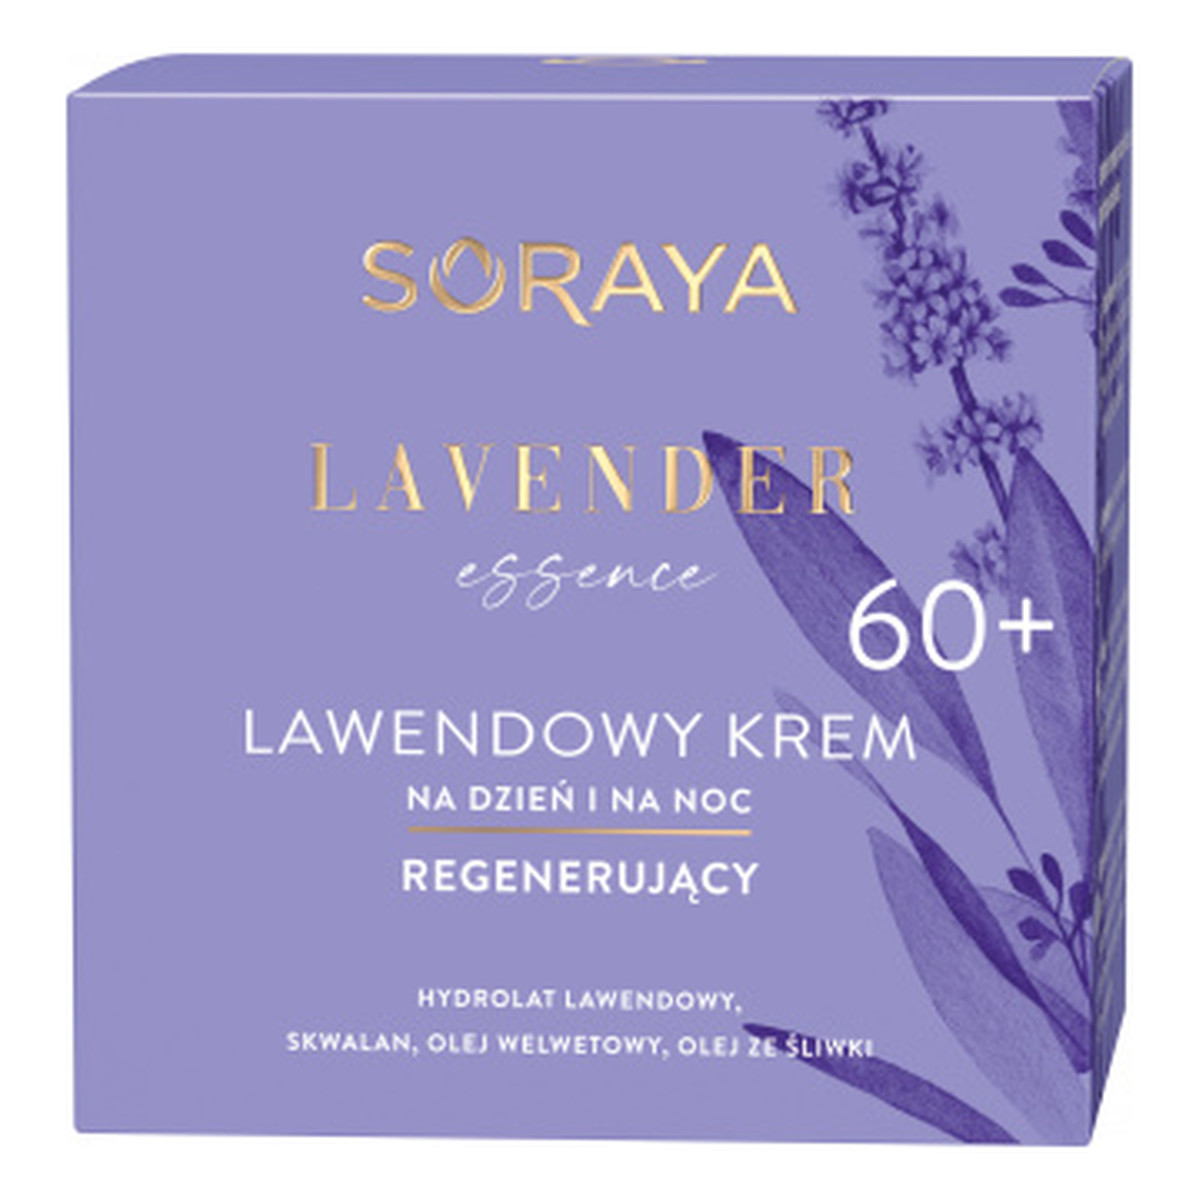 Soraya Lavender Essence Lawendowy krem regenerujący na dzień i na noc 60+ 50ml